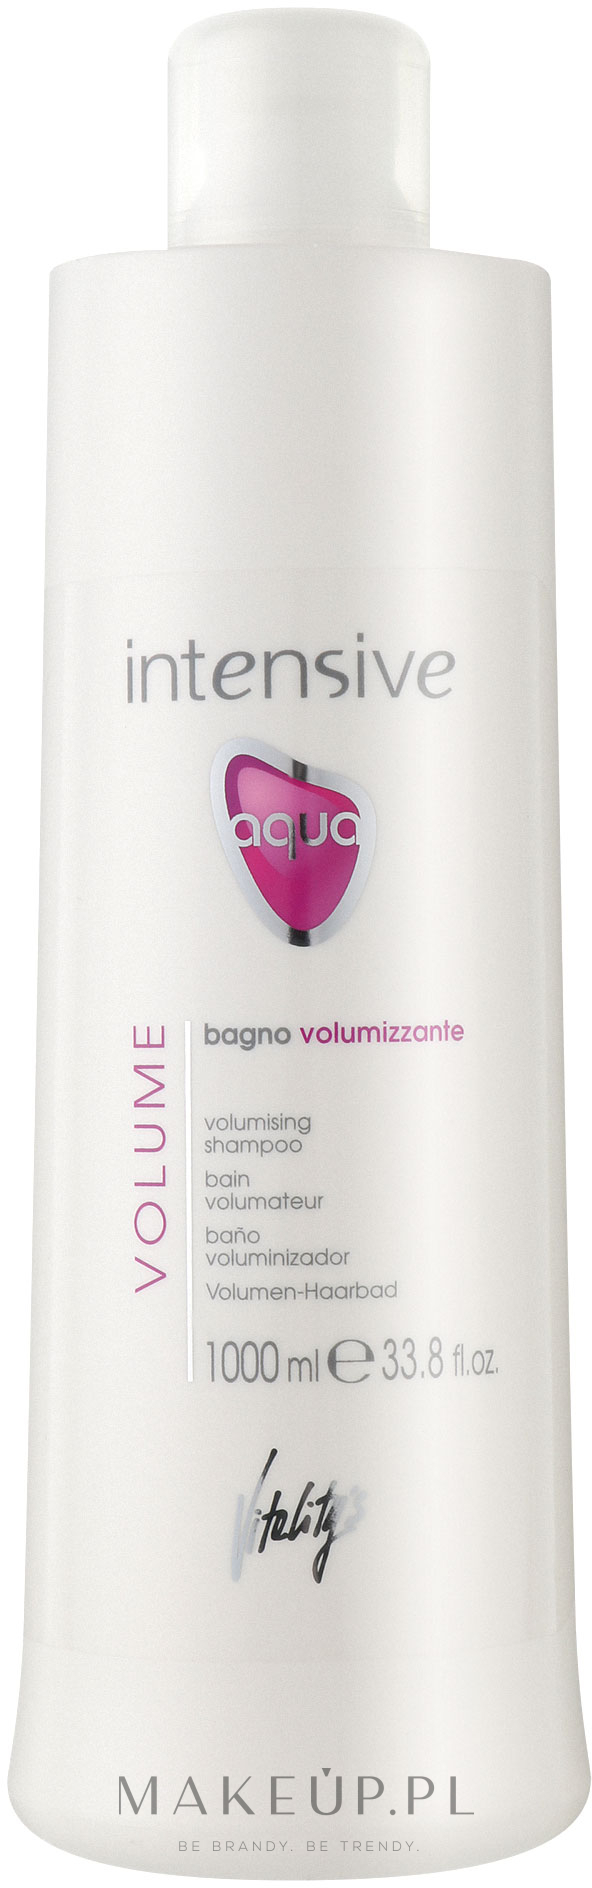 Szampon zwiększający objętość włosów - Vitality's Intensive Aqua Volumising Shampoo — Zdjęcie 1000 ml